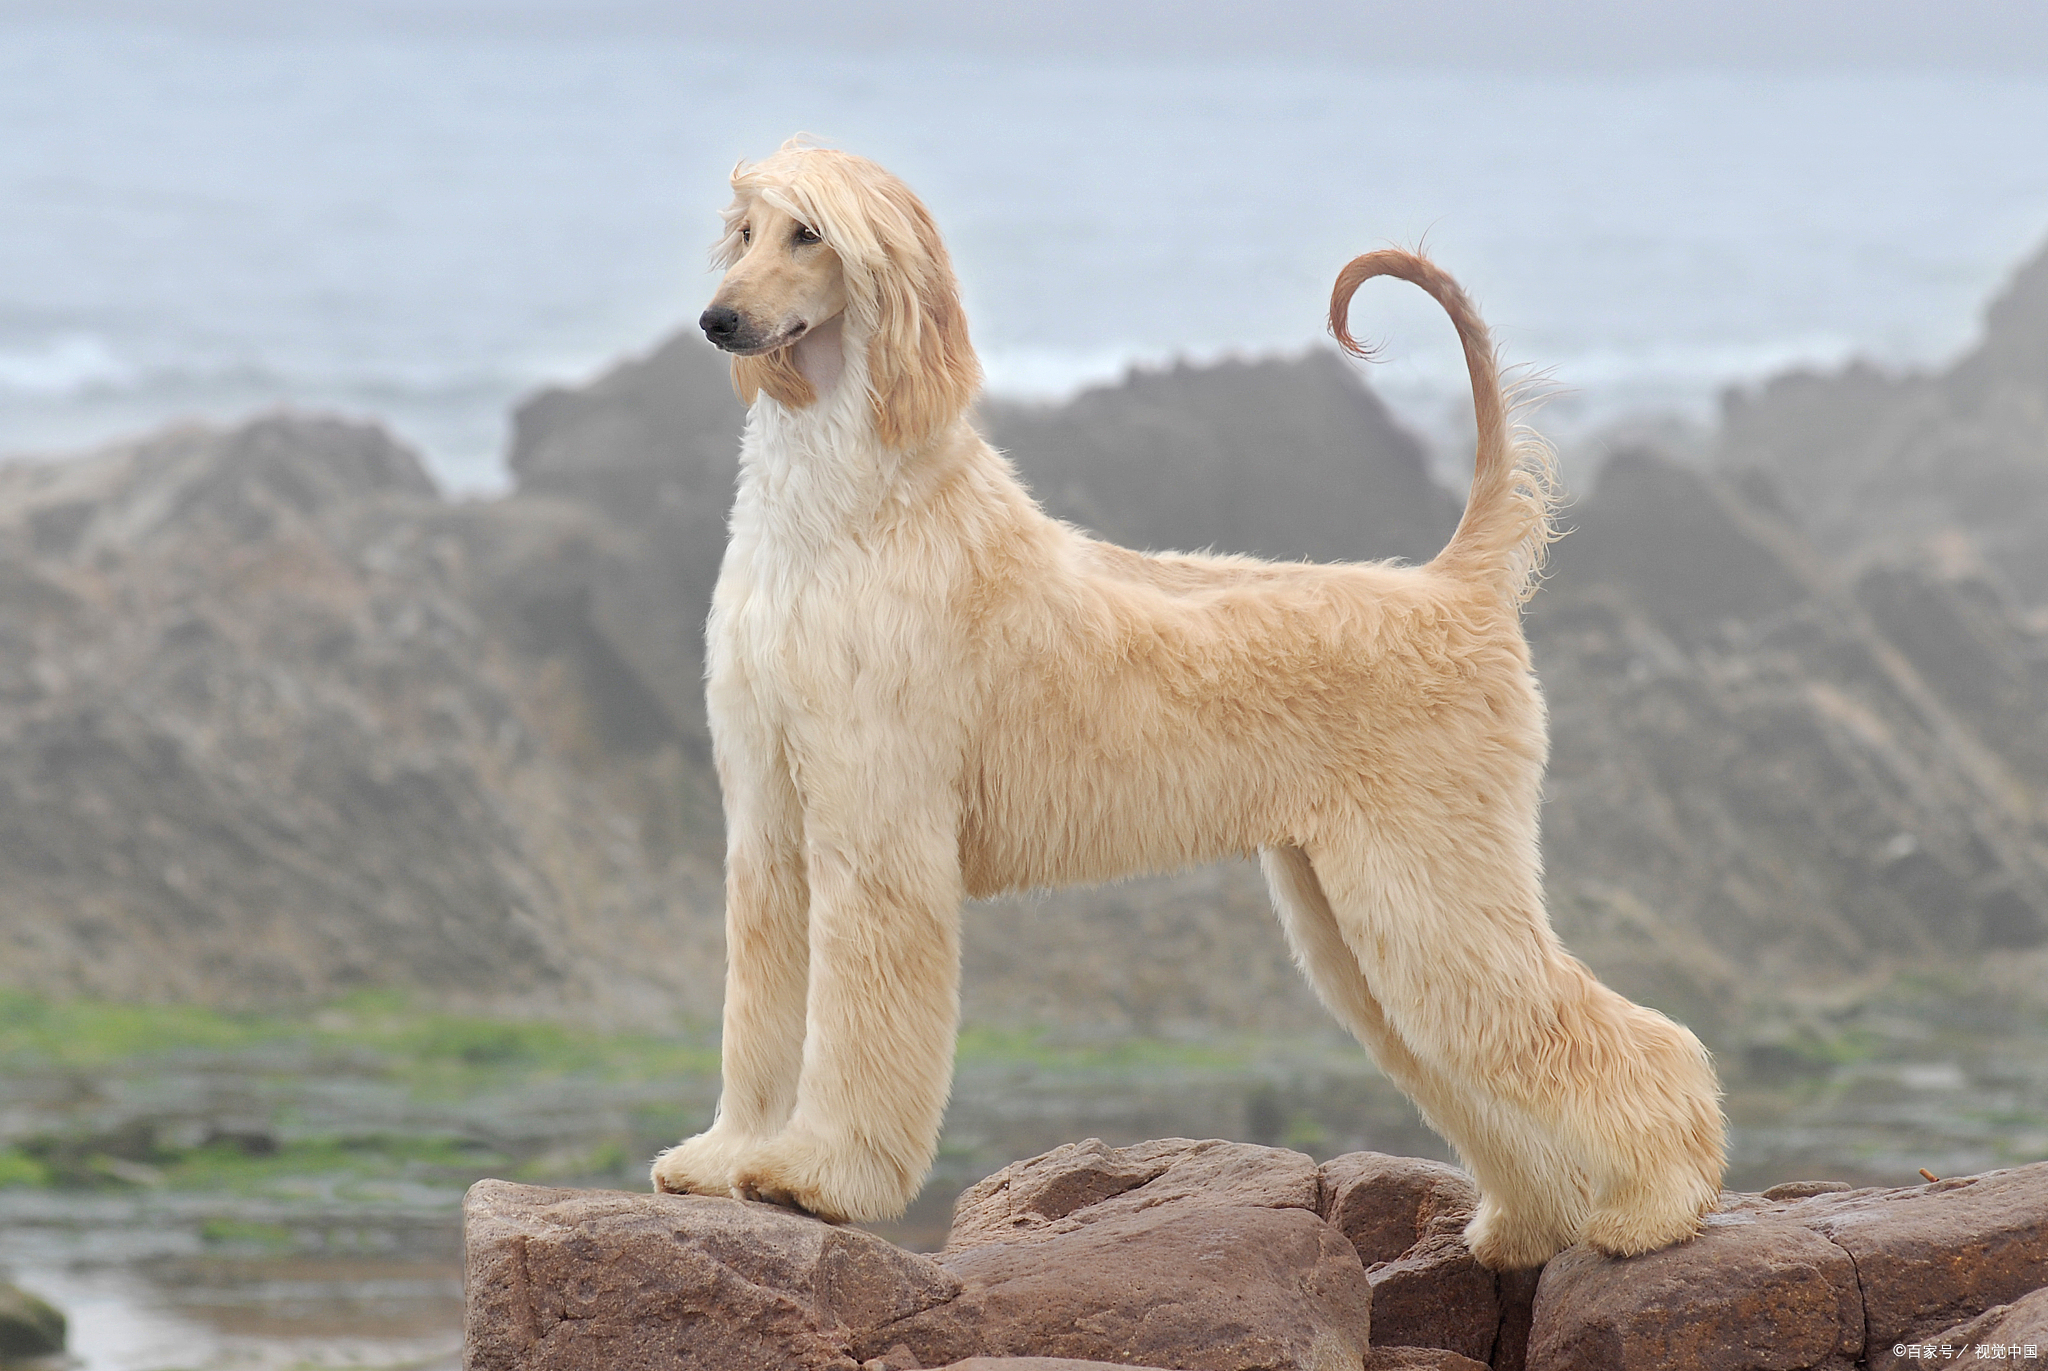 阿富汗猎犬拥有顺滑的长毛,充满贵族气质阿富汗猎犬多少钱一只?